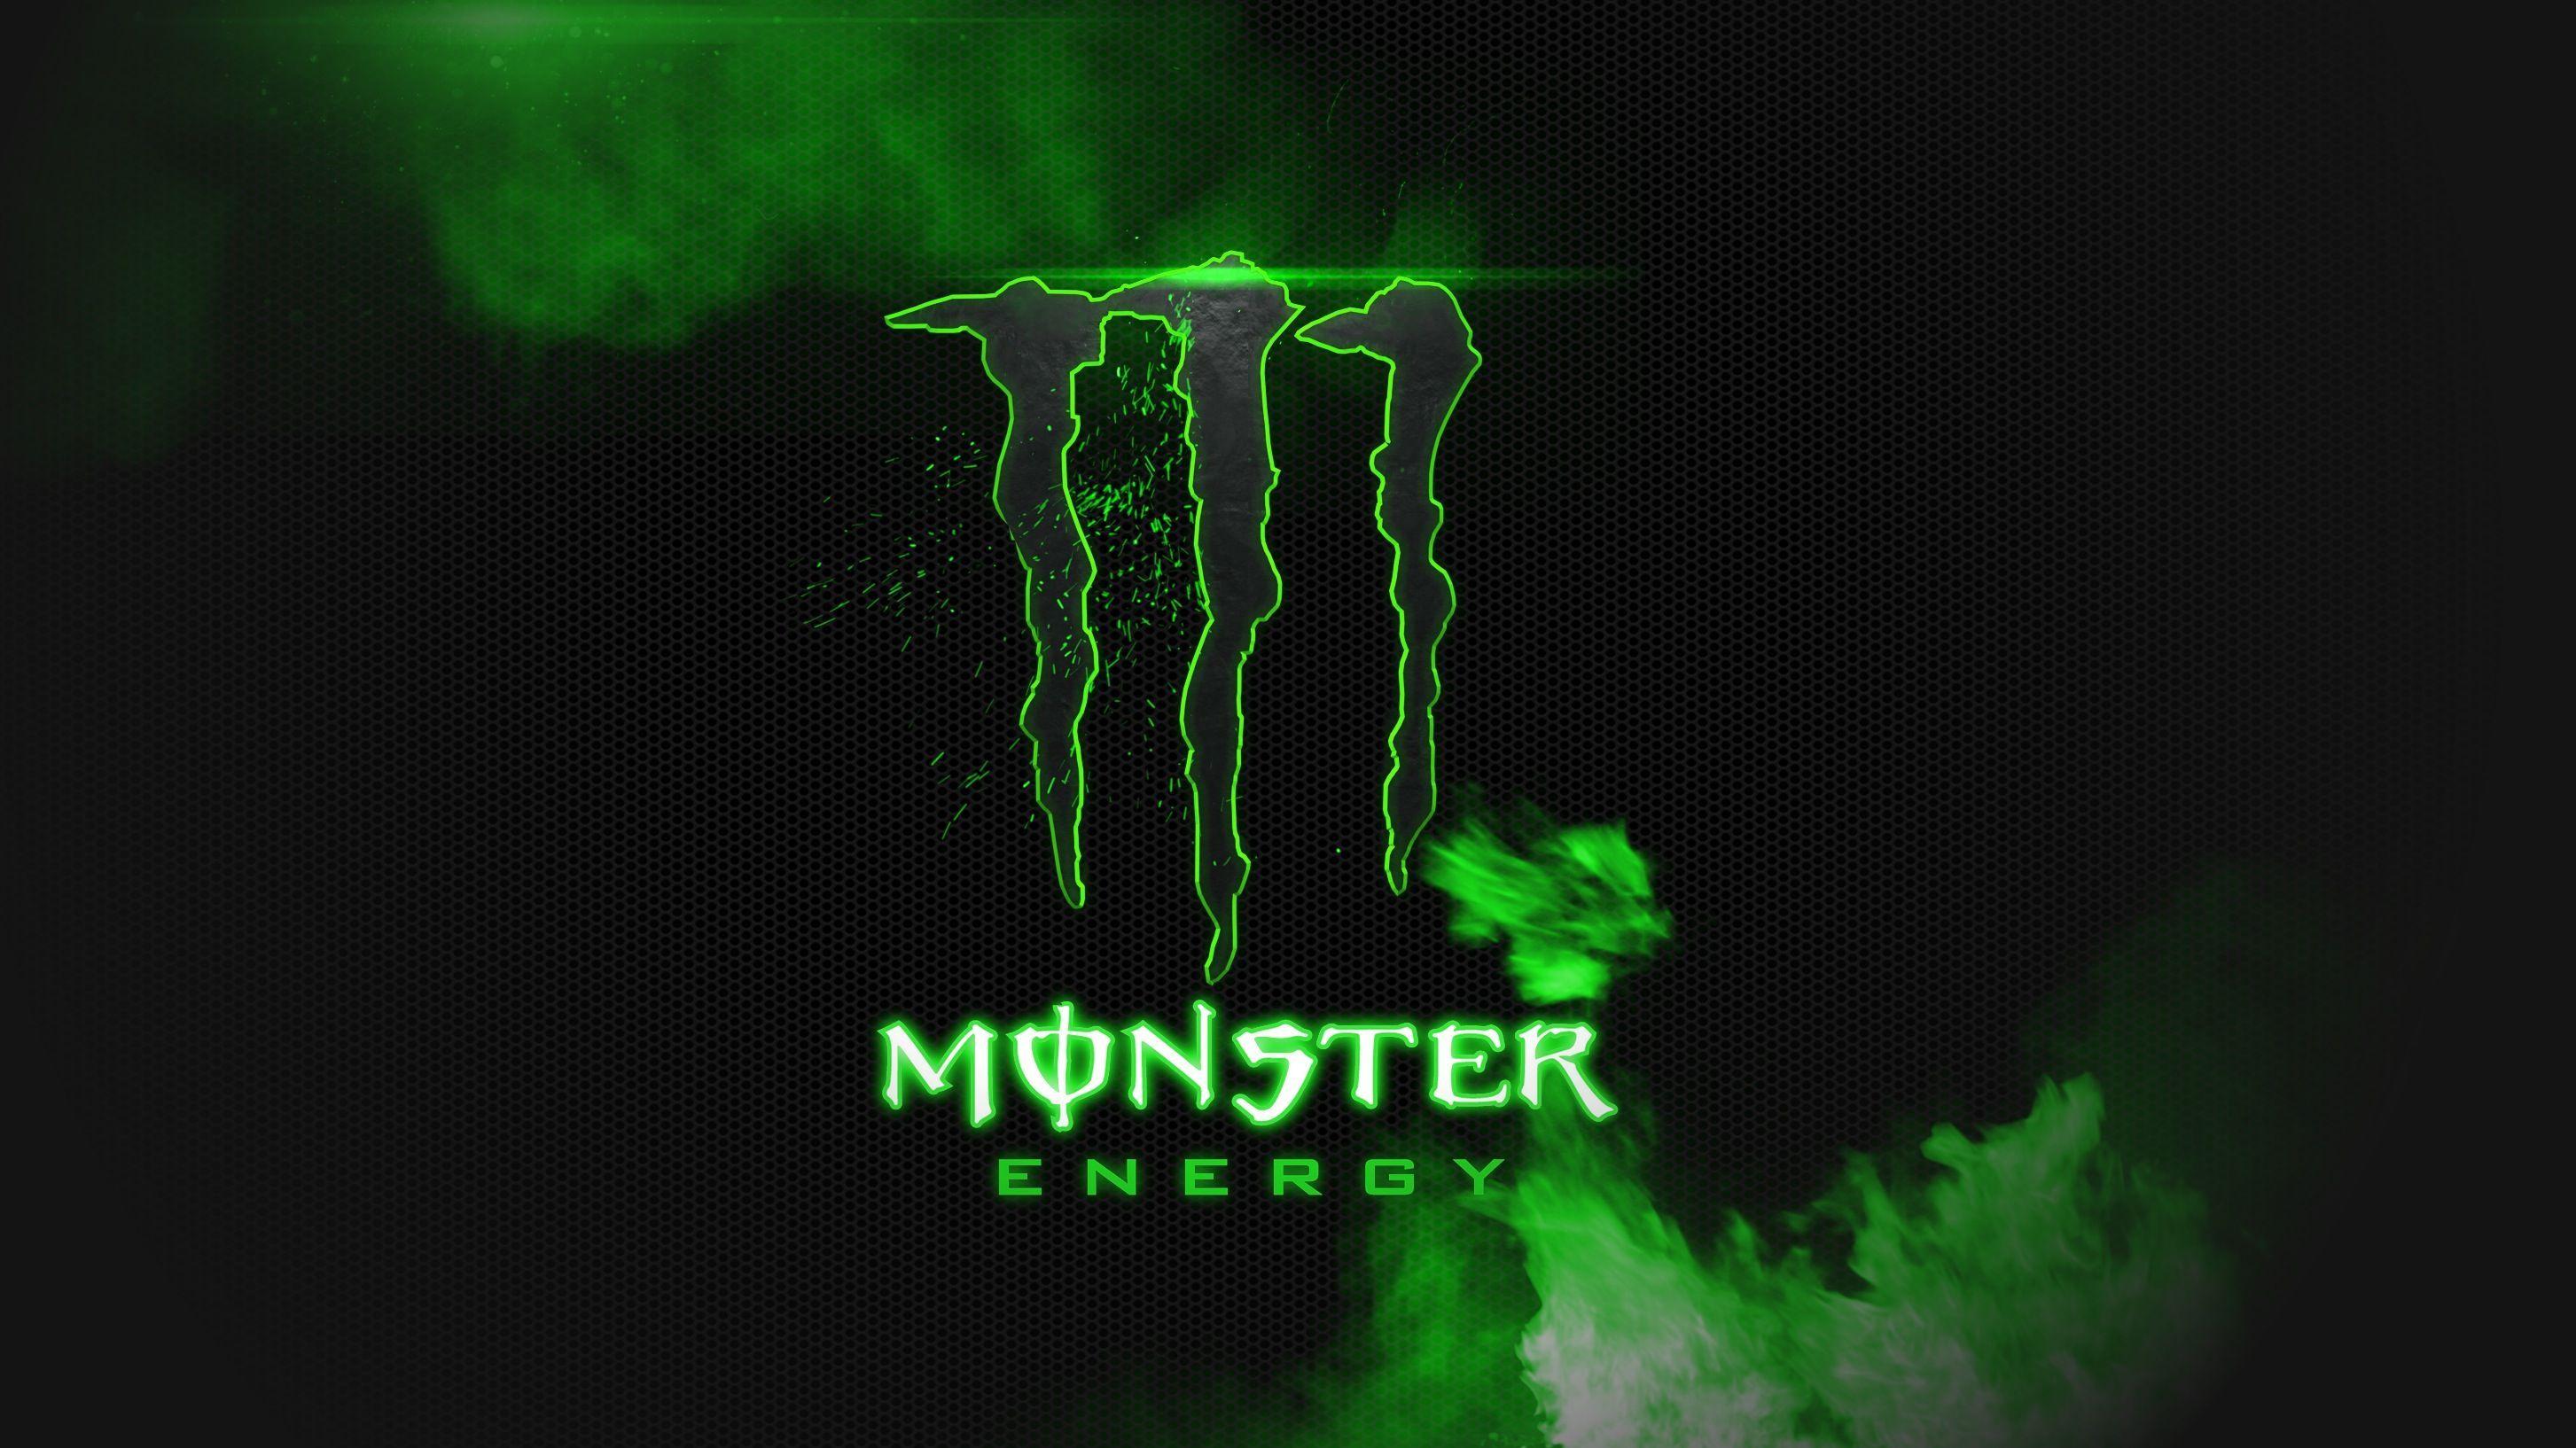 Monster Energy Black And Green HD Wallpaper Background Image. Monster energy, Monster energy drink, Monster